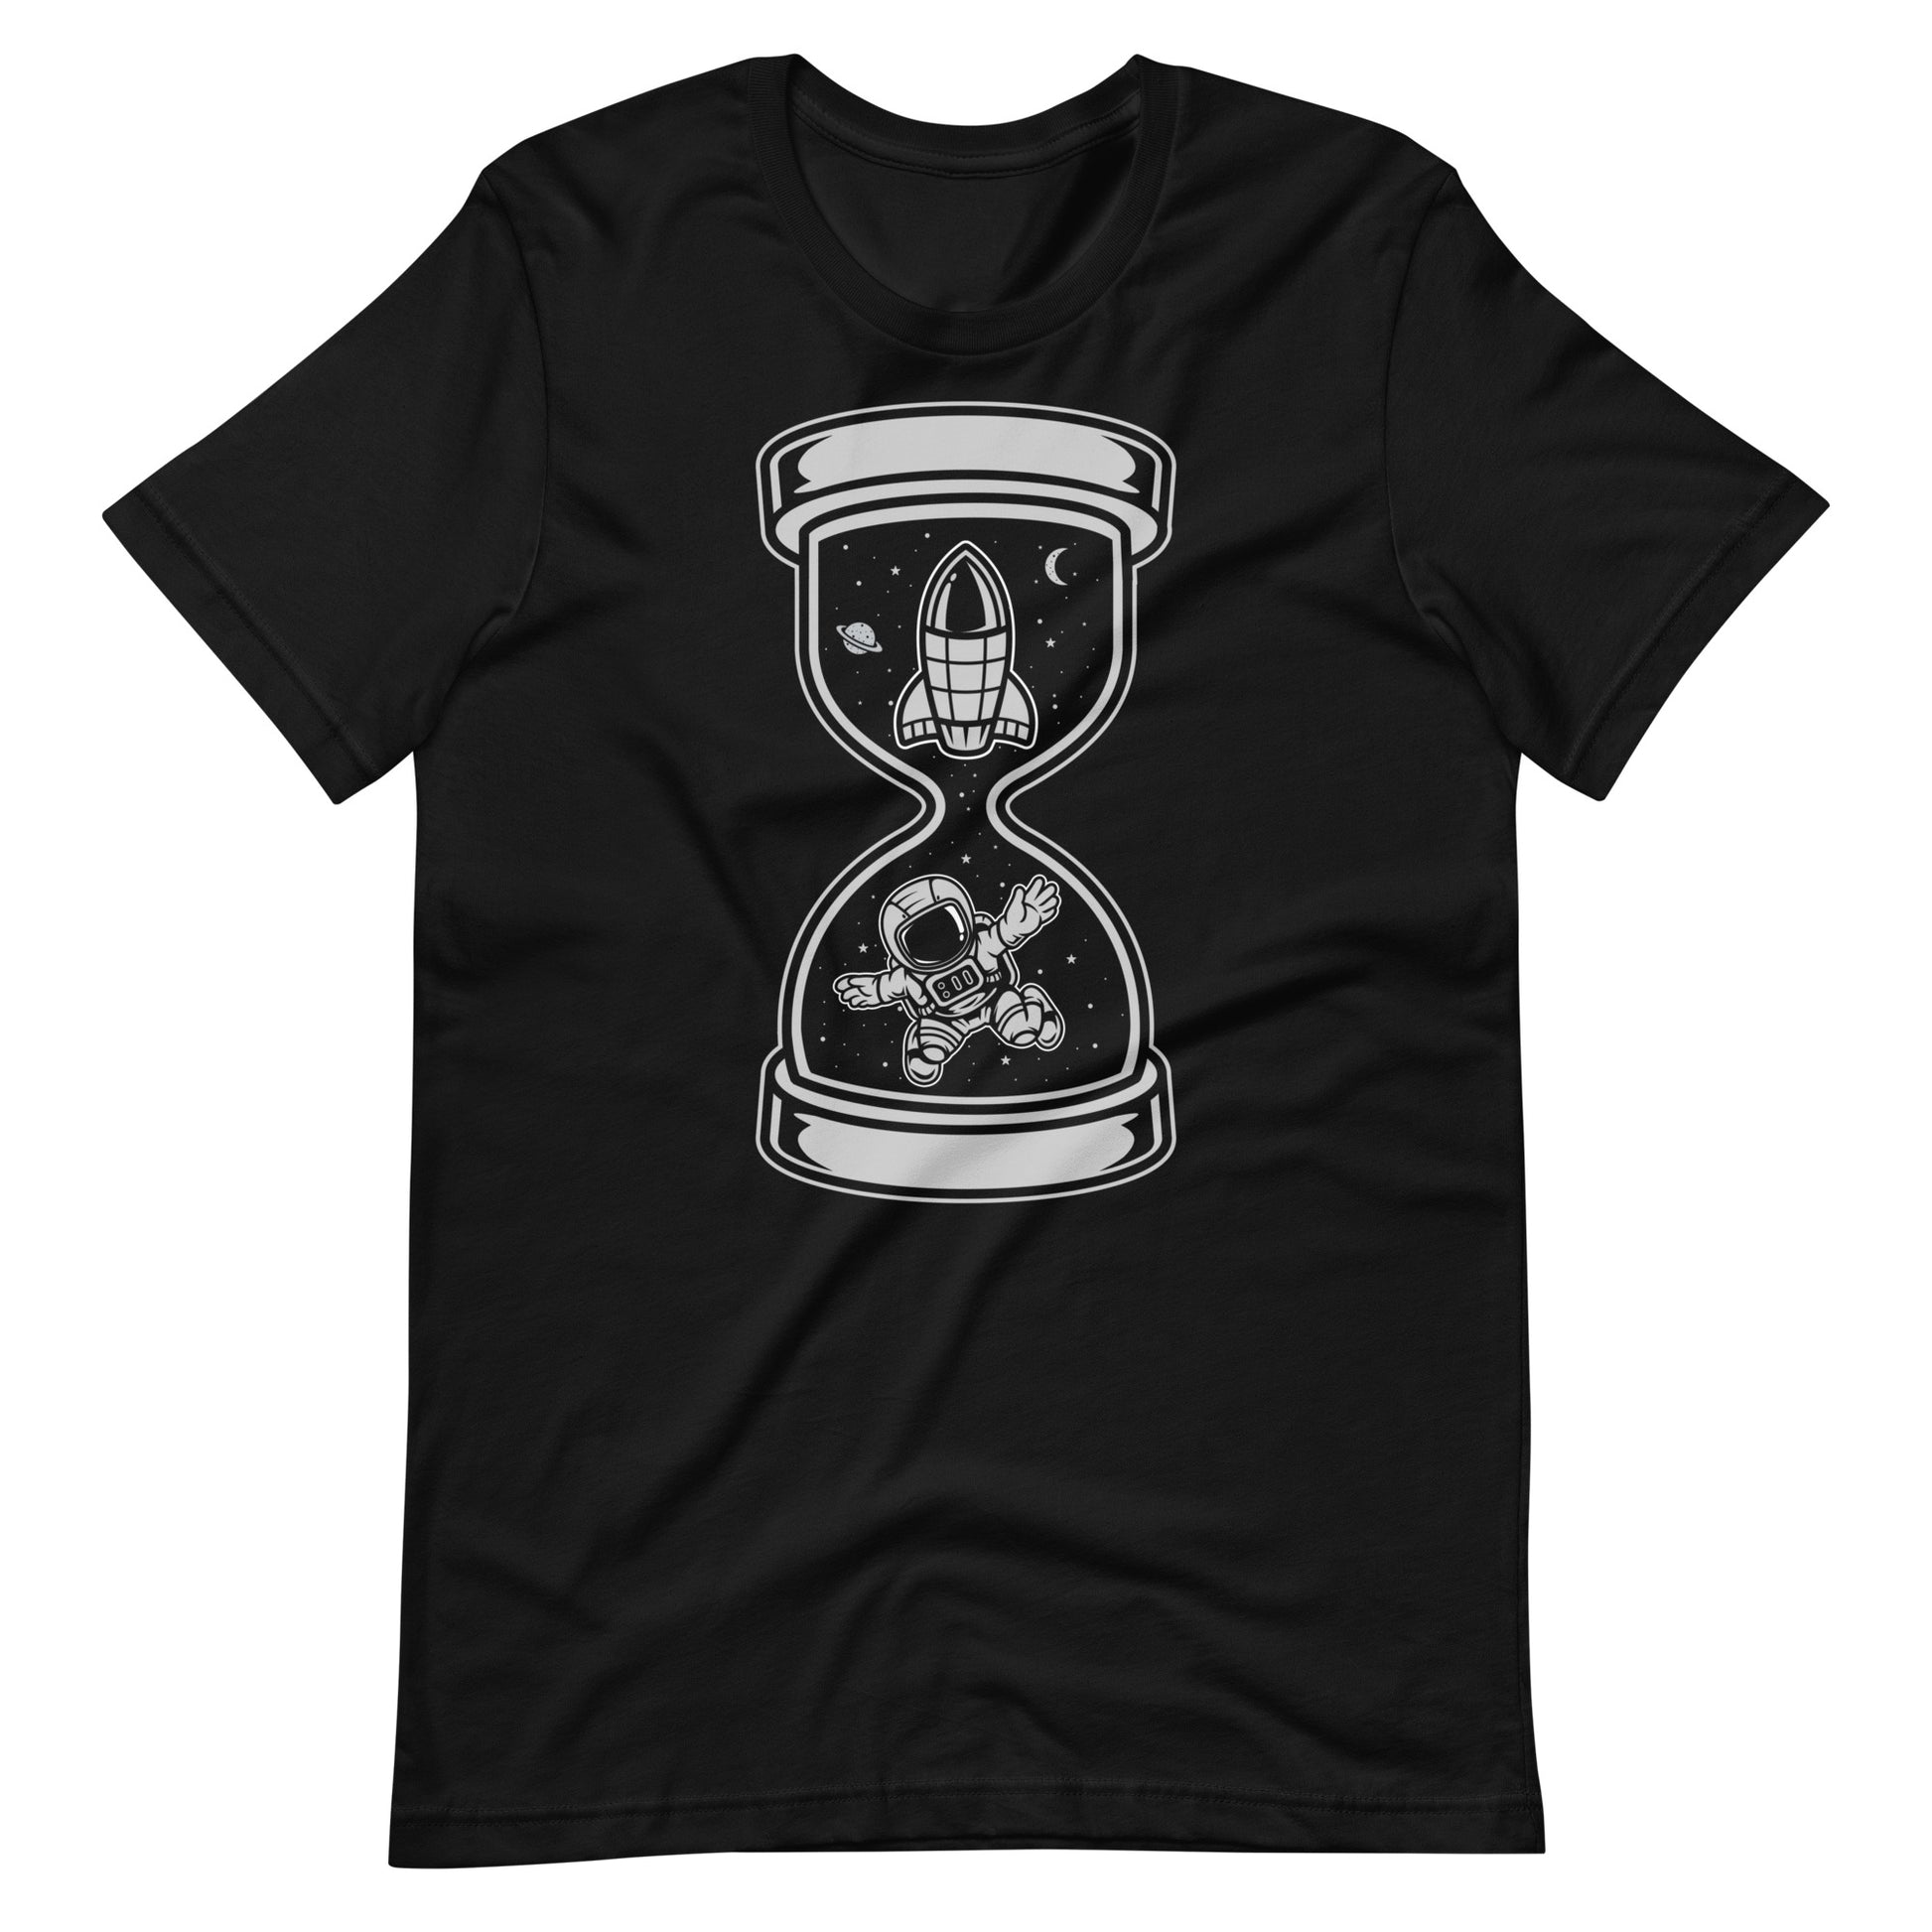 Astronaut Time - Men's t-shirt - Black Front